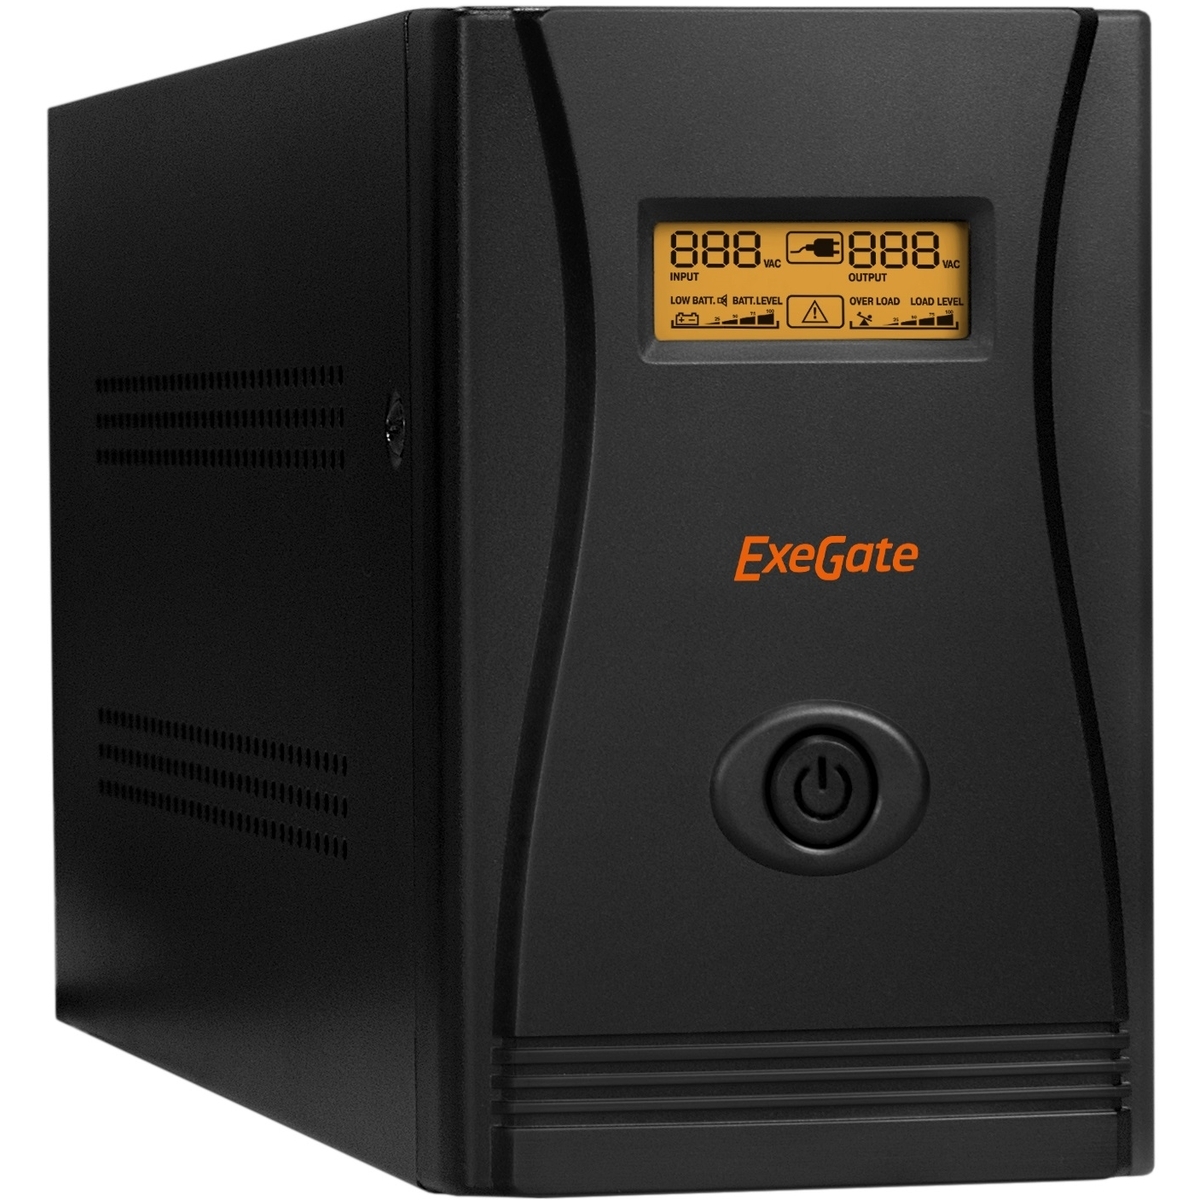 ИБП ExeGate SpecialPro Smart LLB-2200 (EP285531RUS) интерактивный ибп exegate specialpro smart llb 2200 lcd ep285529rus черный